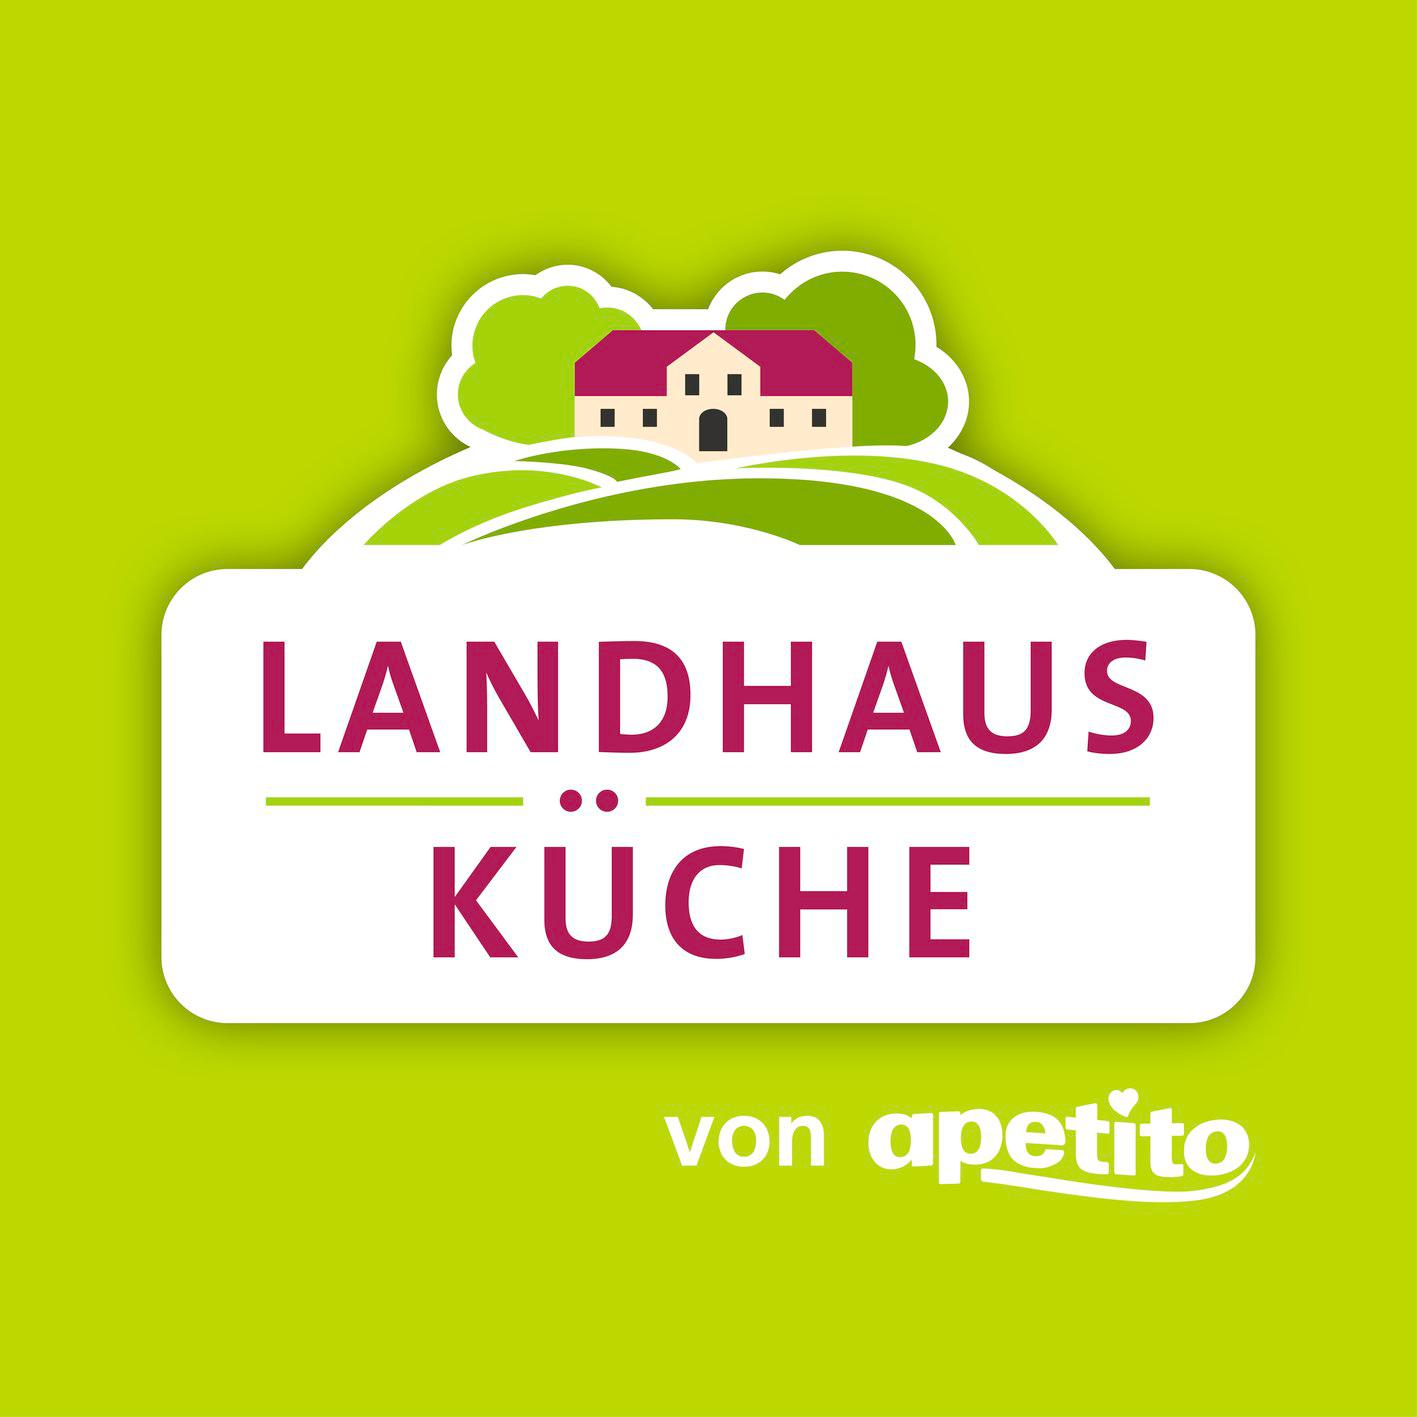 Landhausküche. Essen auf Rädern. Von apetito. in Werder an der Havel - Logo